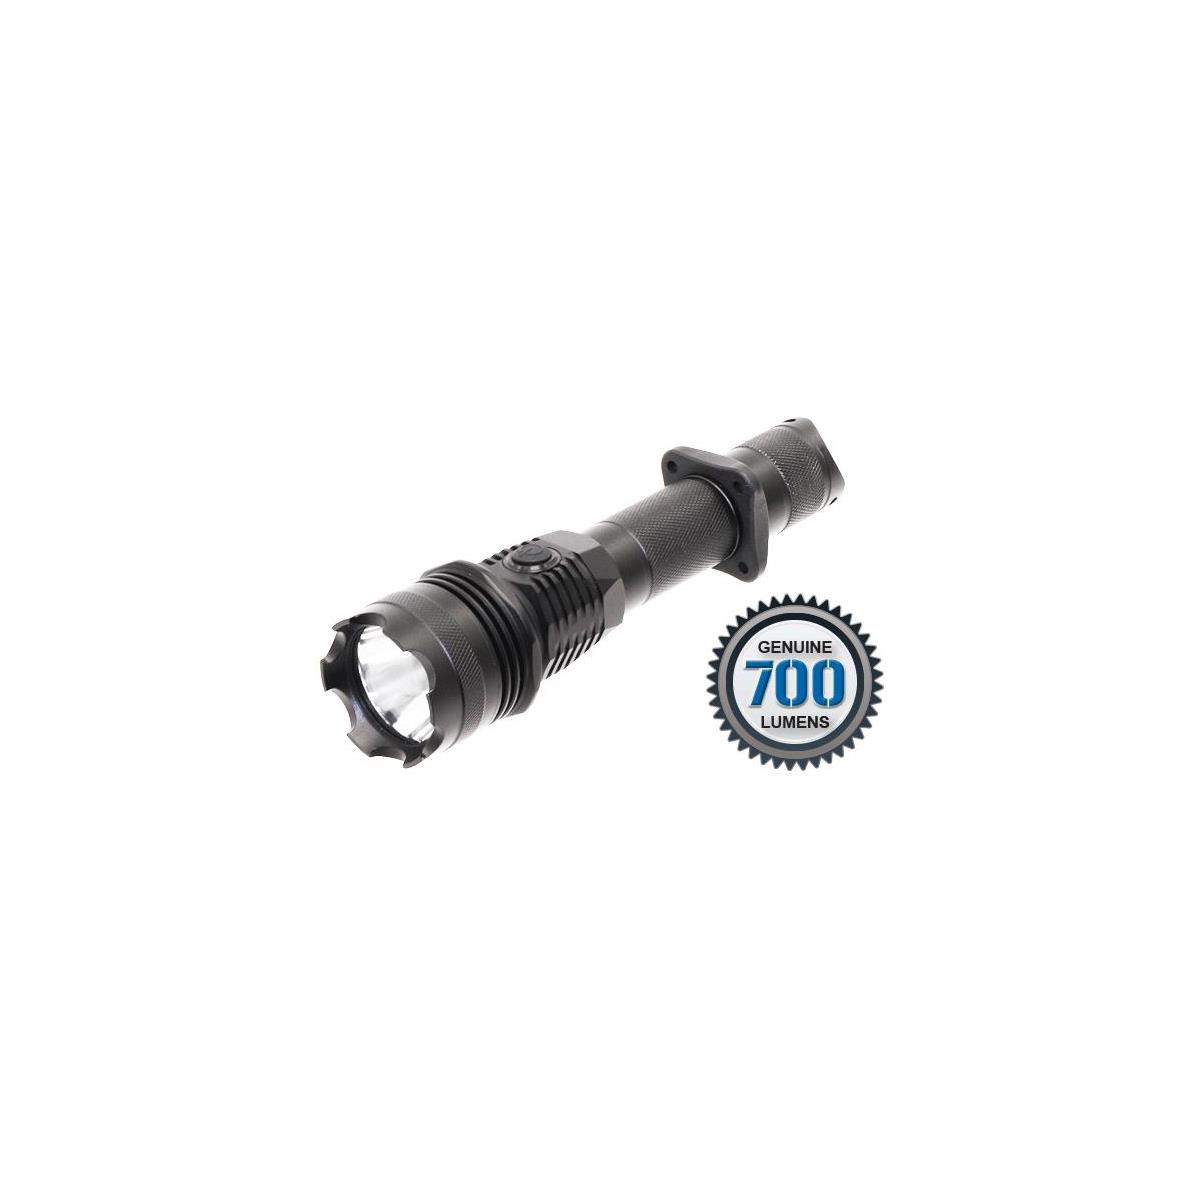 Photos - Torch UTG 700 Lumen LIBRE Intensity Adjustable LED Flashlight LT-EL700